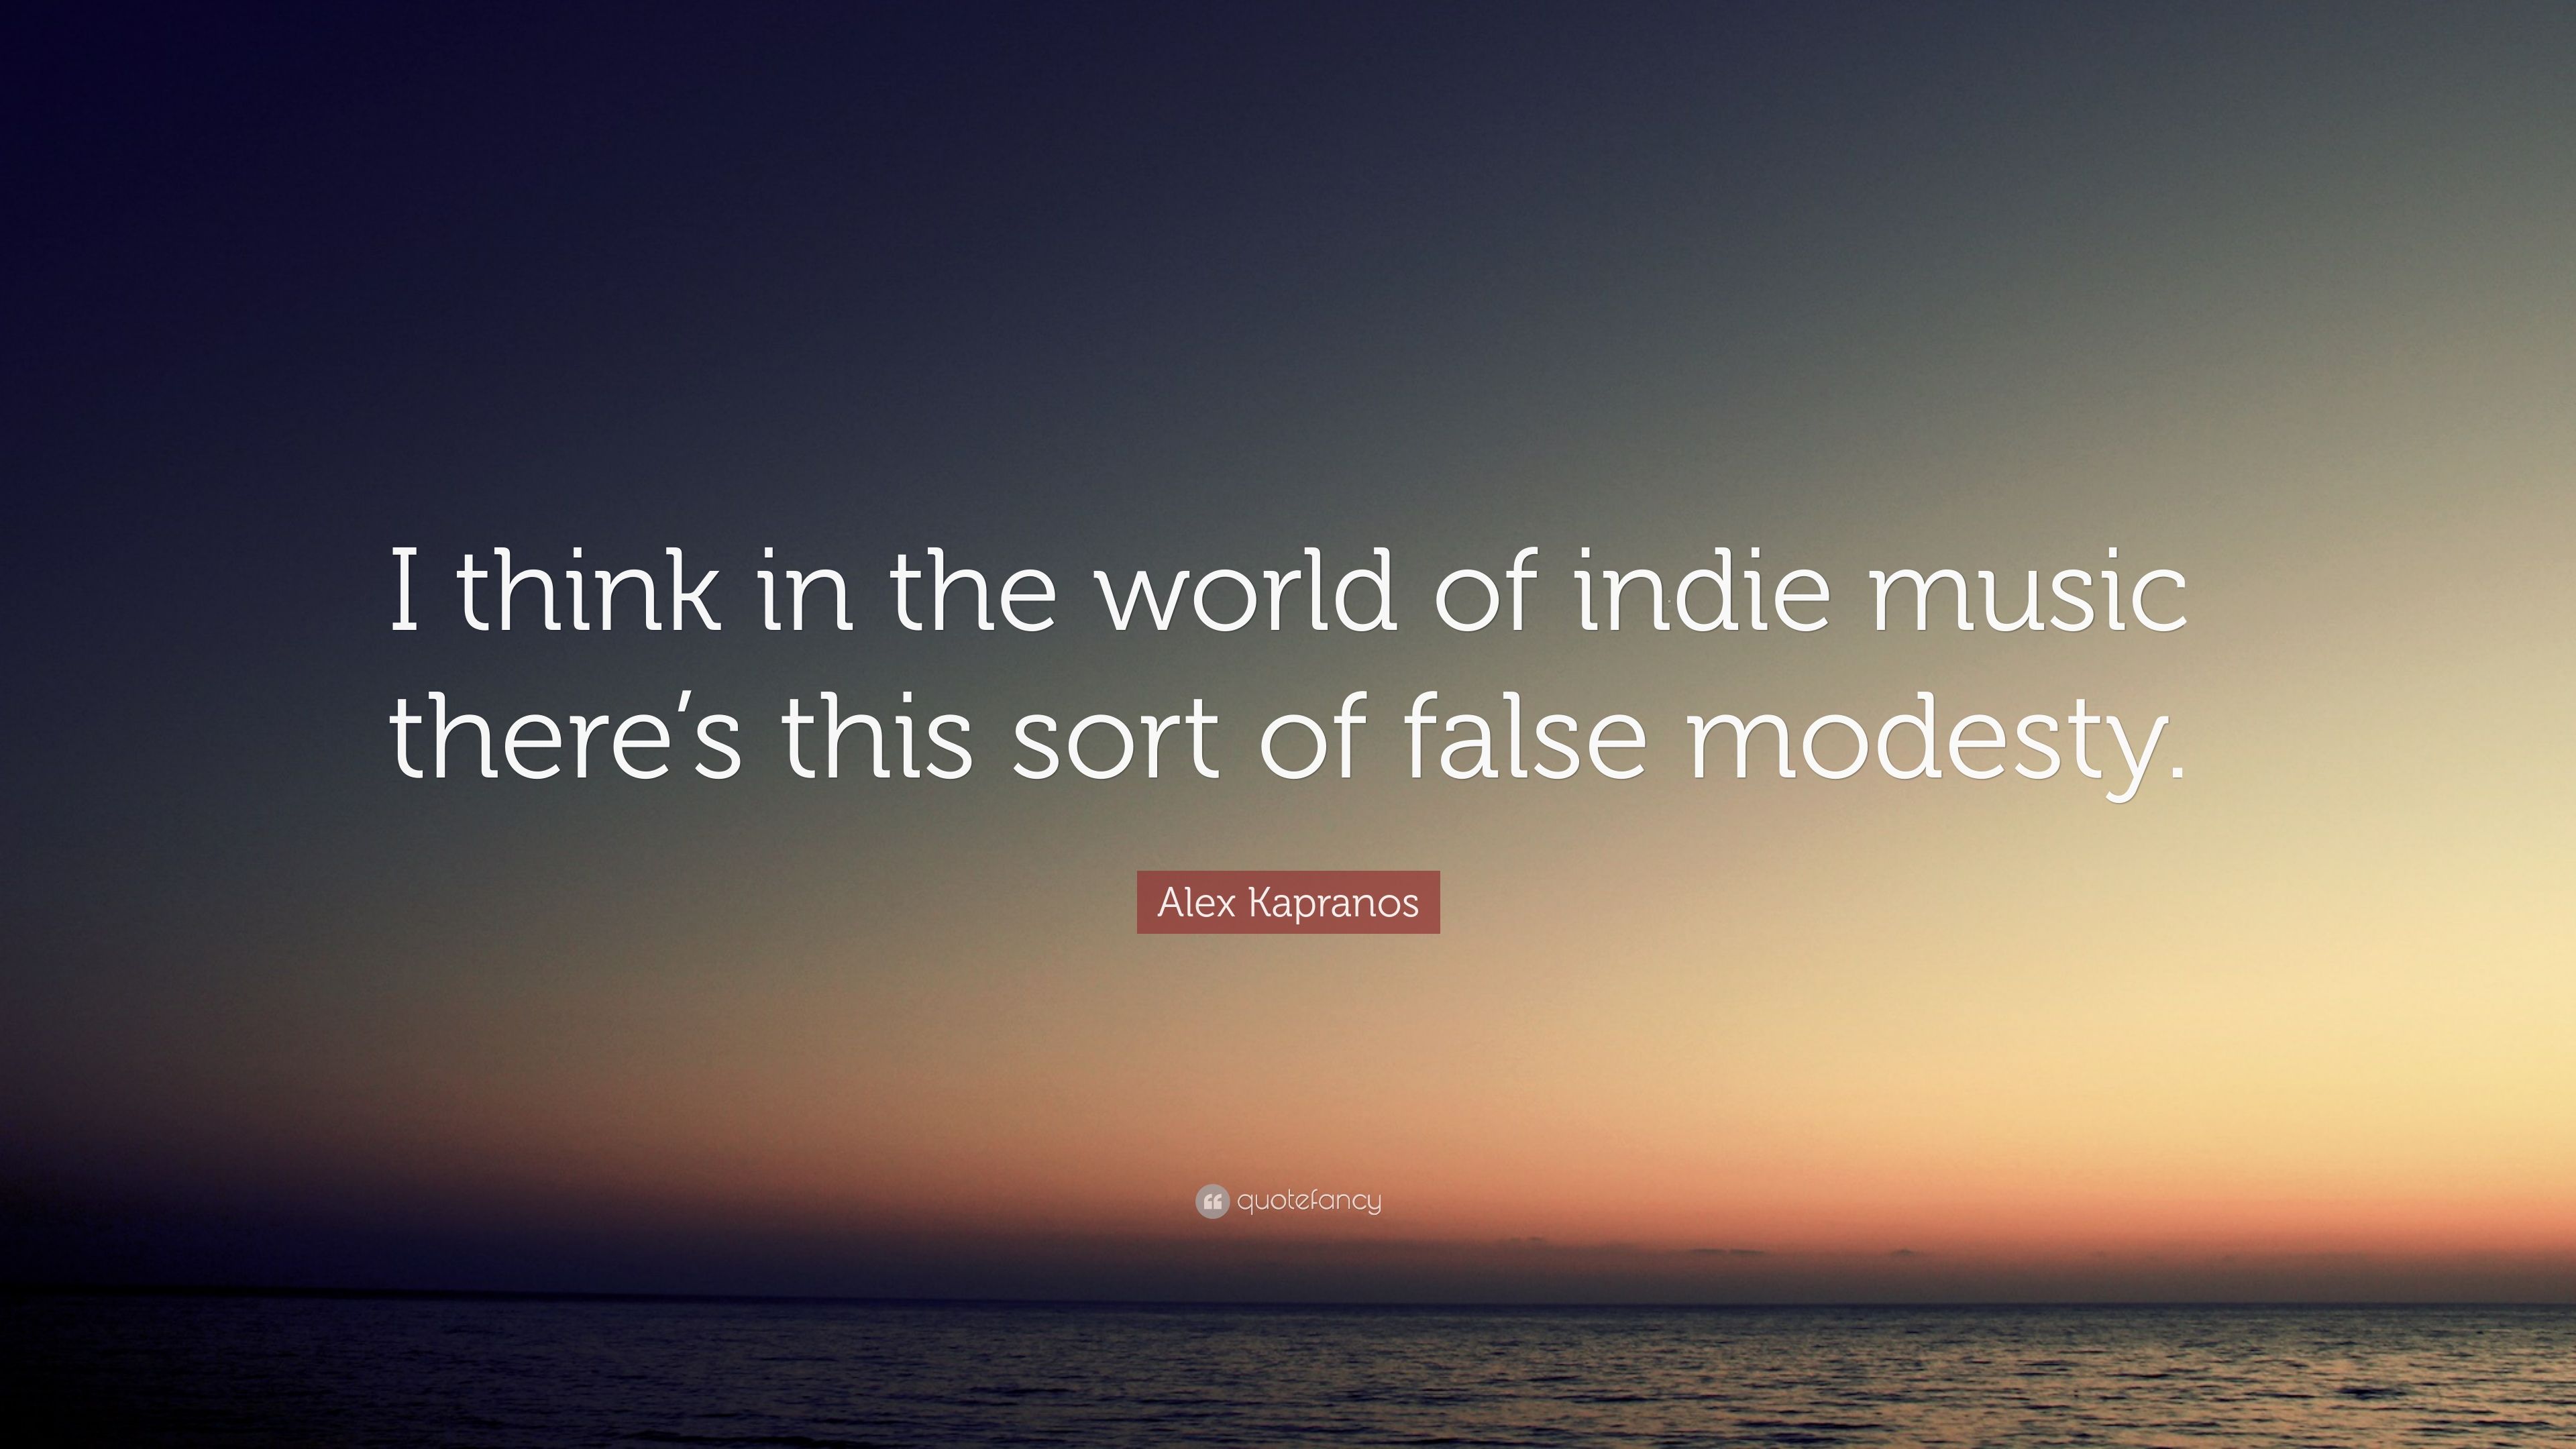 Alex Kapranos Quote: “I think inquotefancy.com